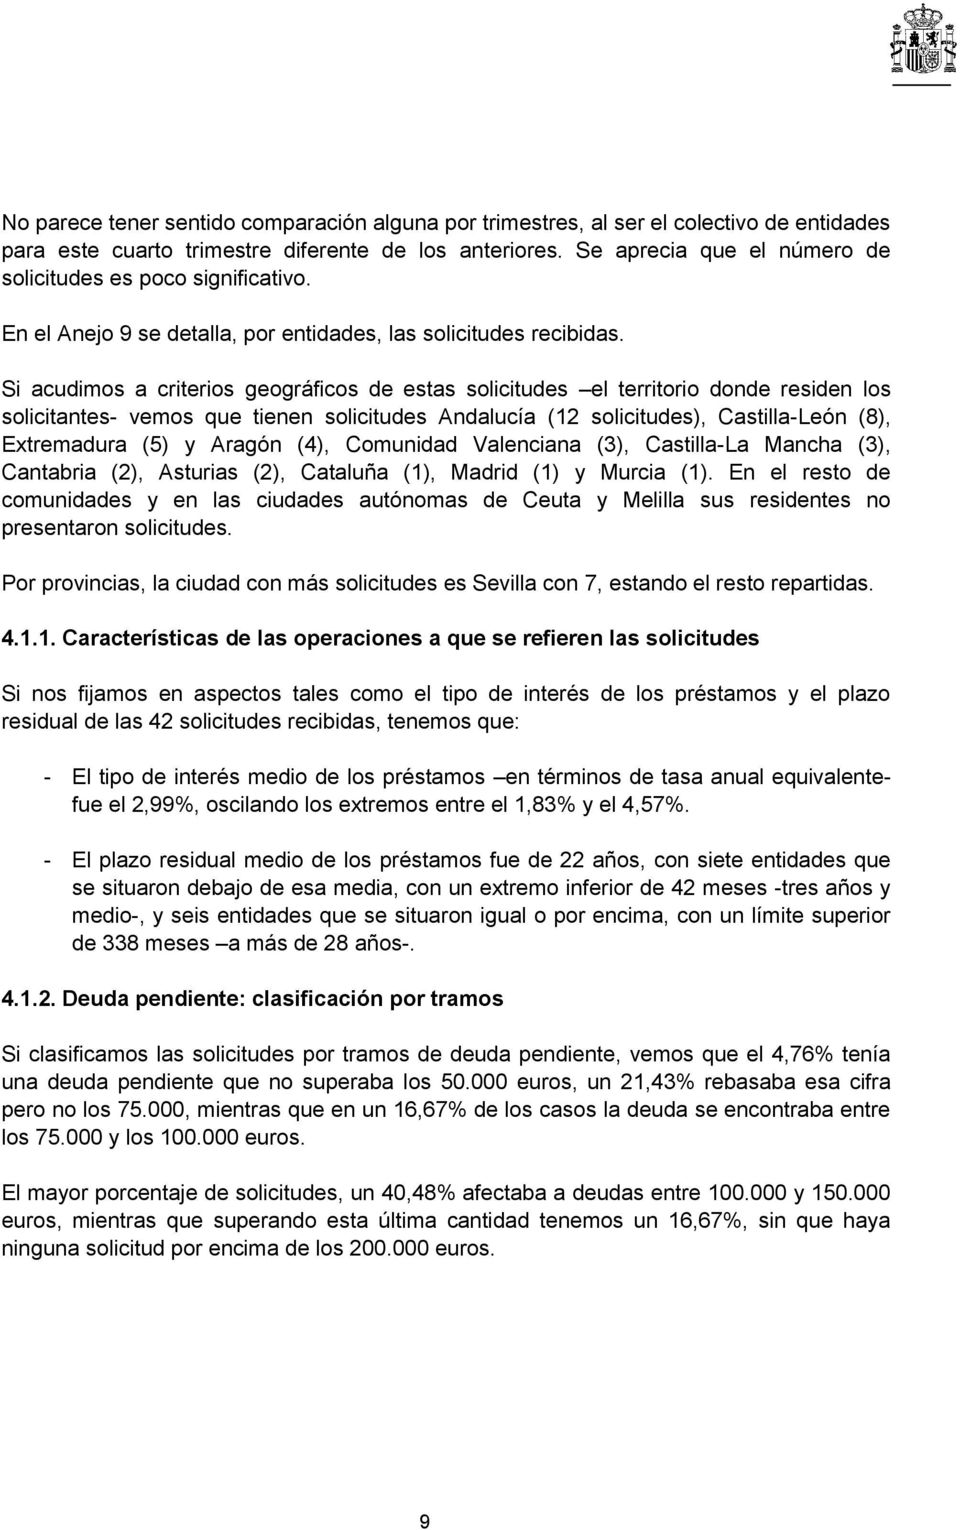 Si acudimos a criterios geográficos de estas solicitudes el territorio donde residen los solicitantes- vemos que tienen solicitudes Andalucía (12 solicitudes), Castilla-León (8), Extremadura (5) y